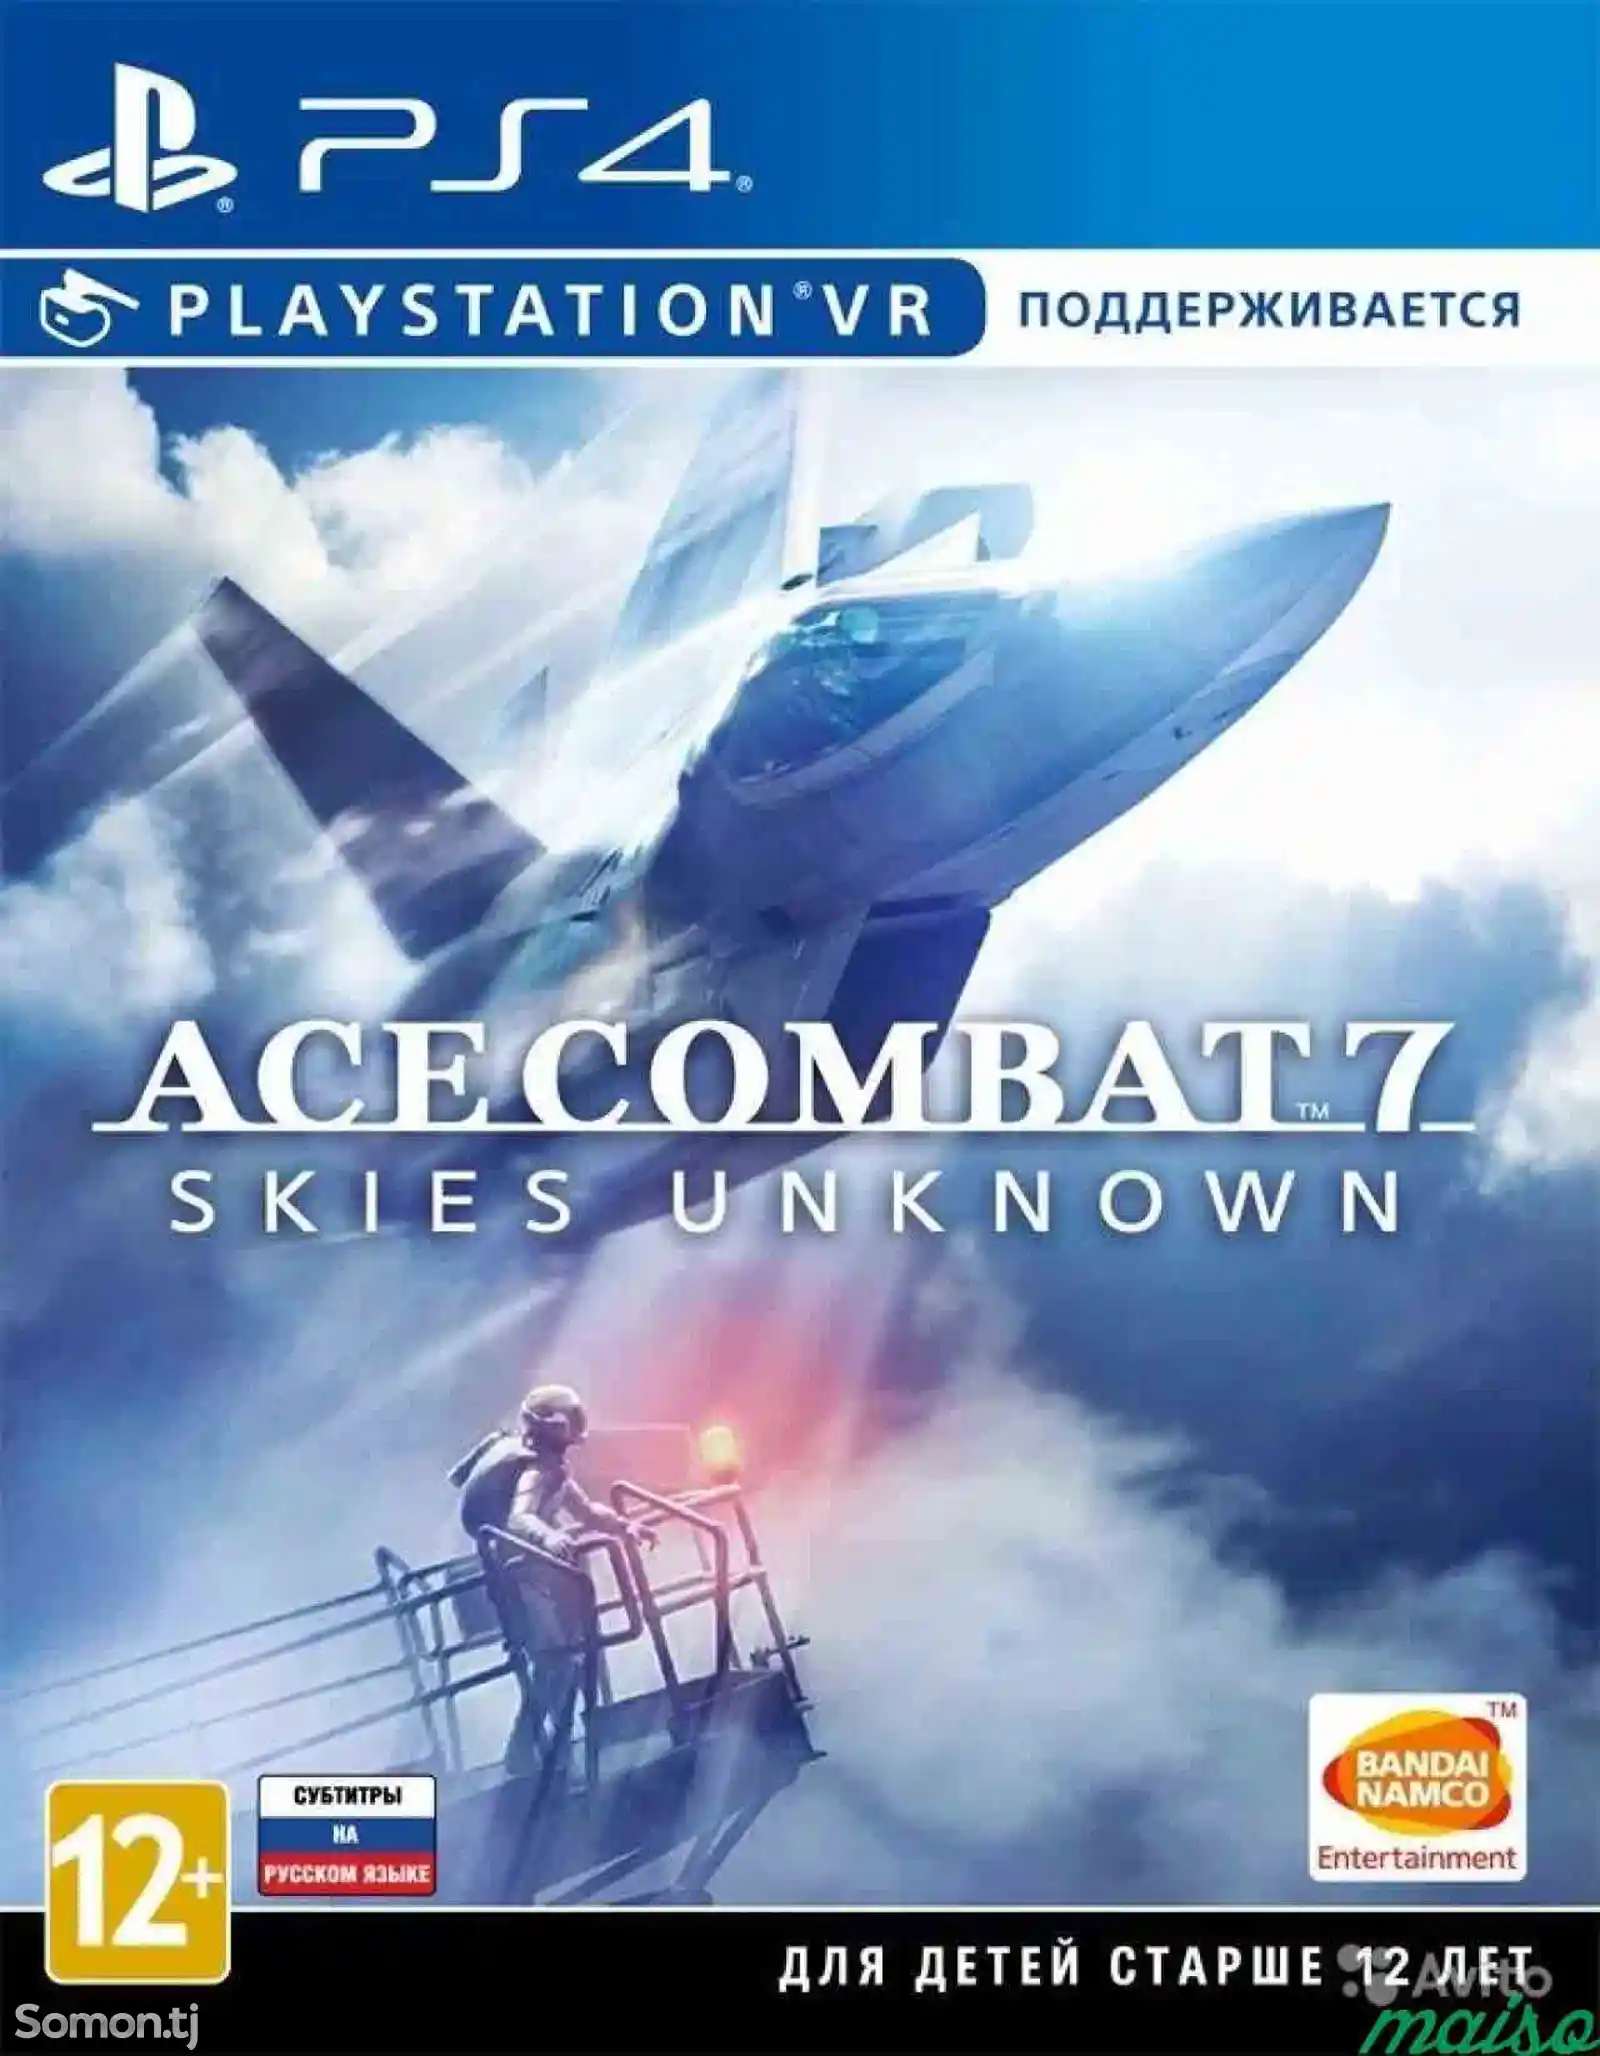 Игра Ace combat 7 для PS-4 / 5.05 / 6.72 / 7.02 / 7.55 / 9.00 /-1